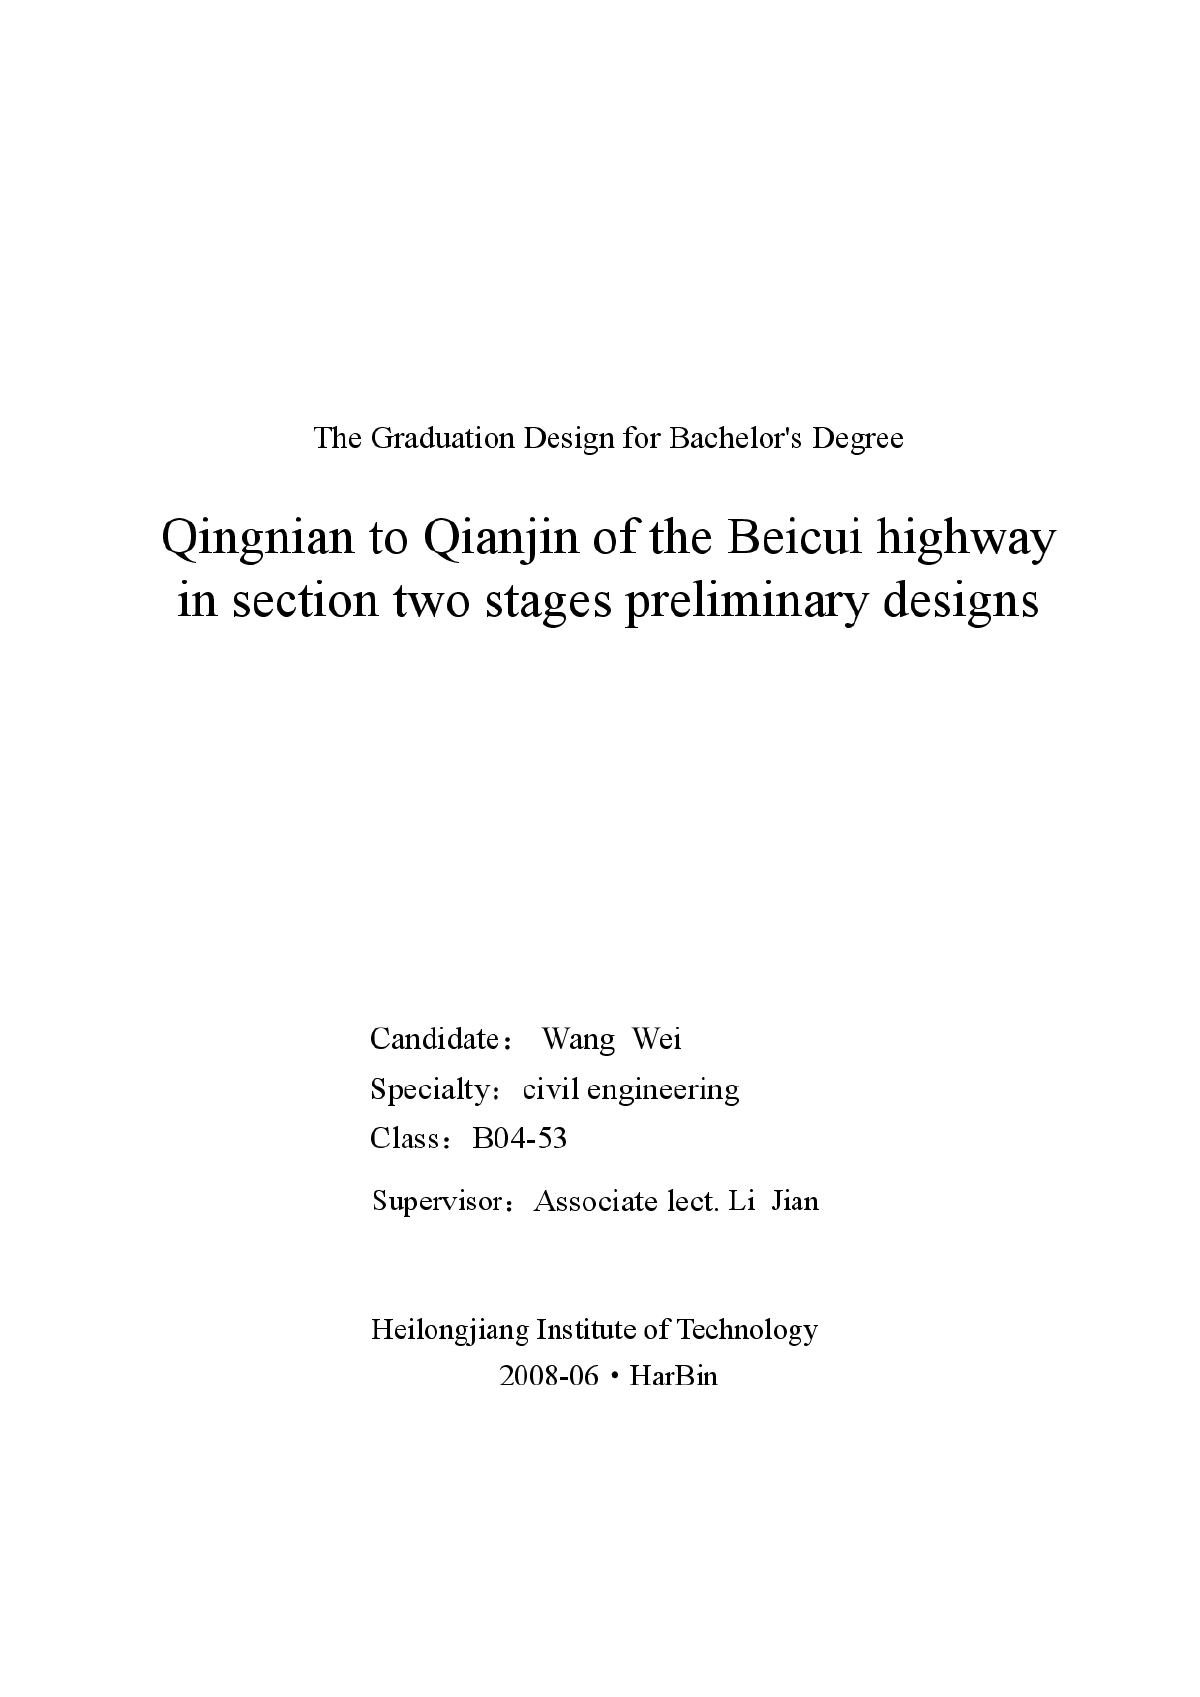 道路工程毕业设计论文